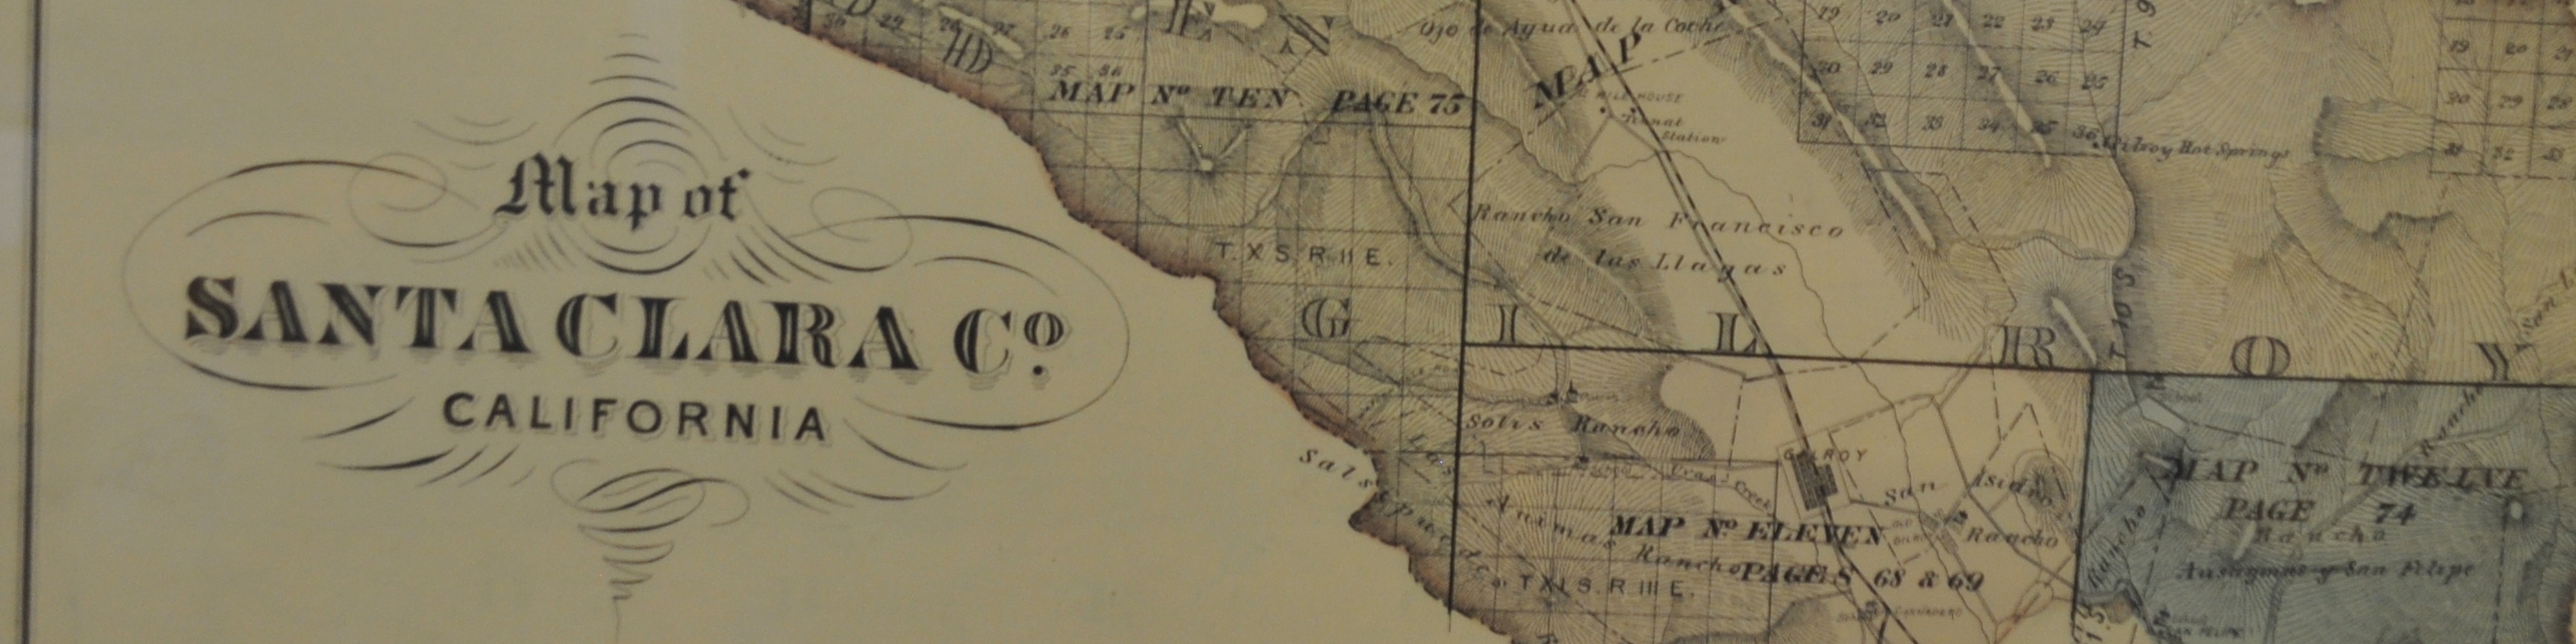 Old map of Santa Clara County